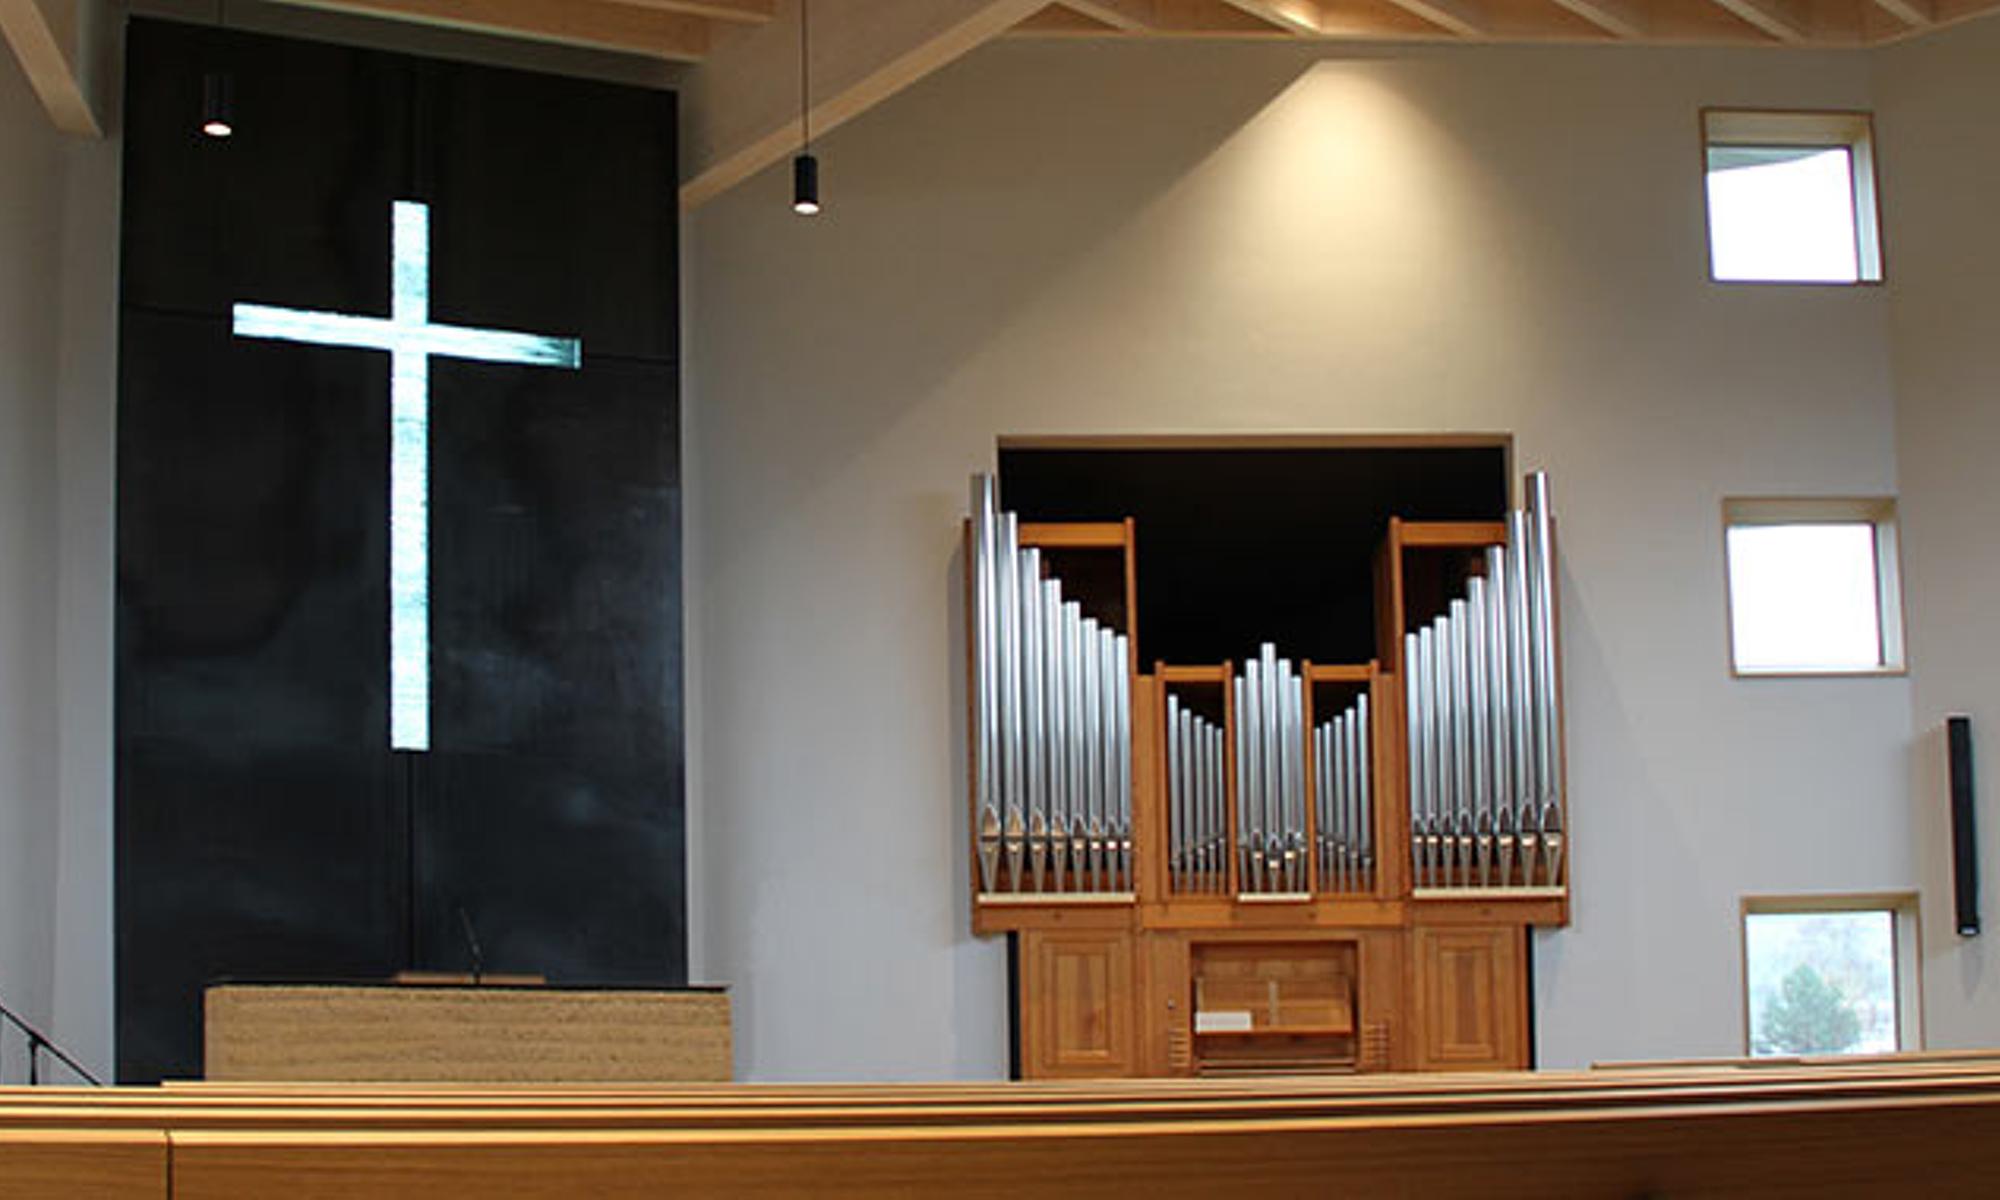 Blick auf den Altar mit dem durchscheinenden Kreuz aus Glasplatten und die Orgel